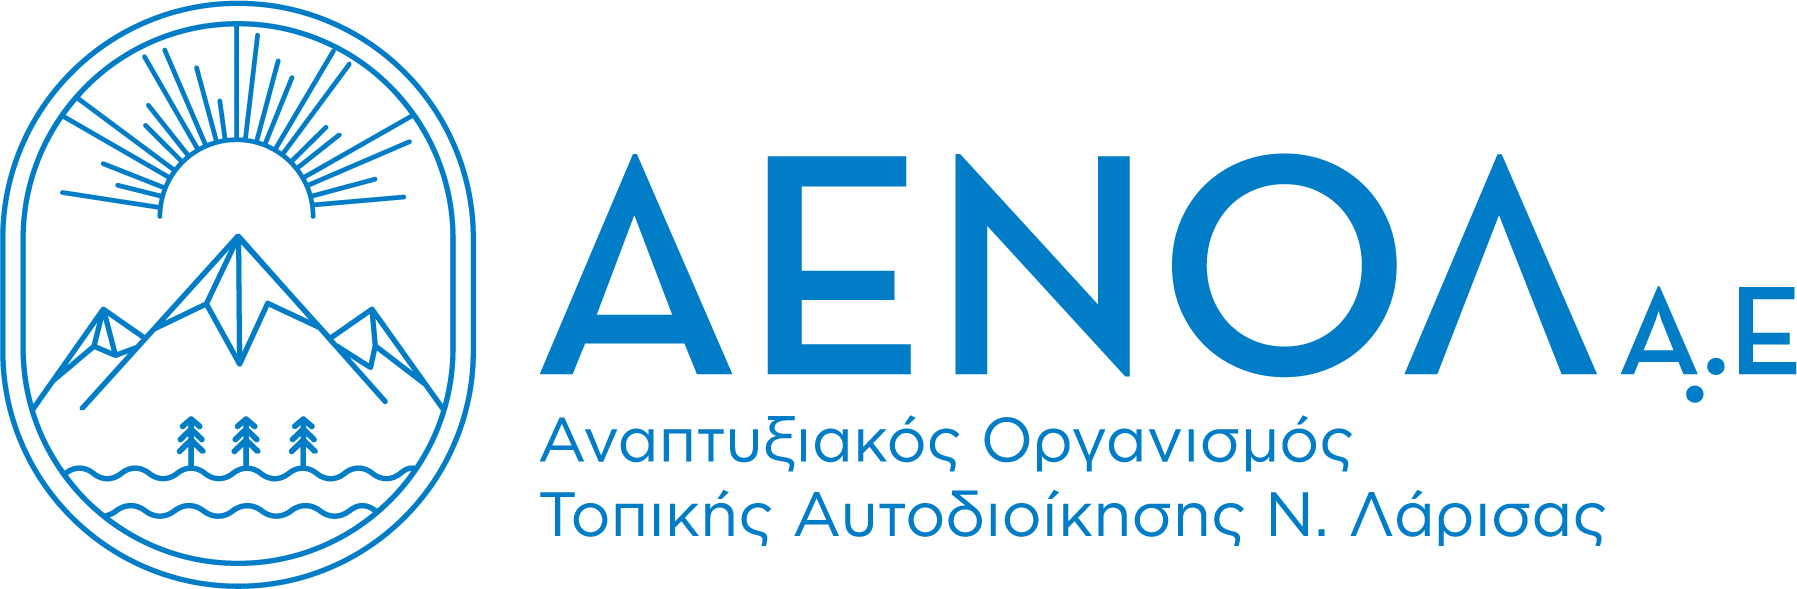 Aenol AE_logo